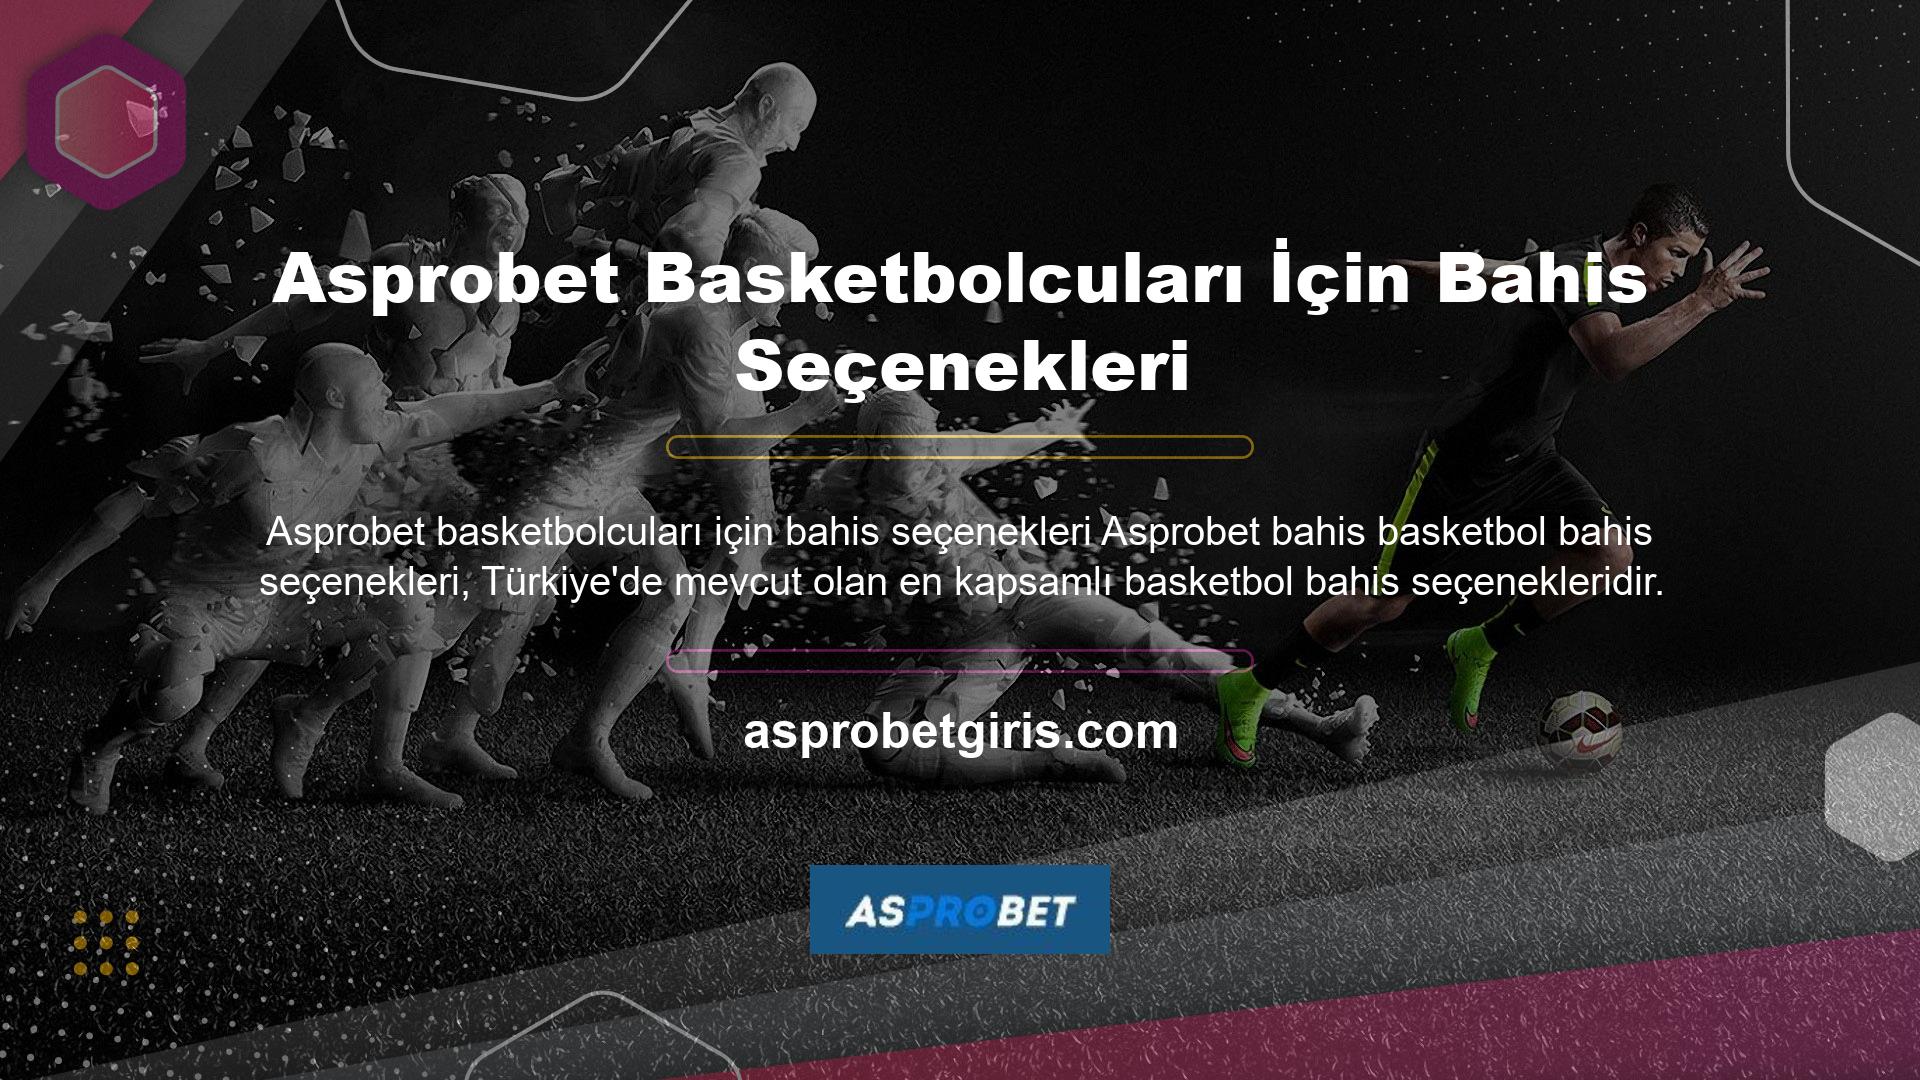 Site, yüzlerce farklı tür arasından seçim yapabileceğiniz geniş bir yelpazede basketbol bahis seçenekleri sunmaktadır